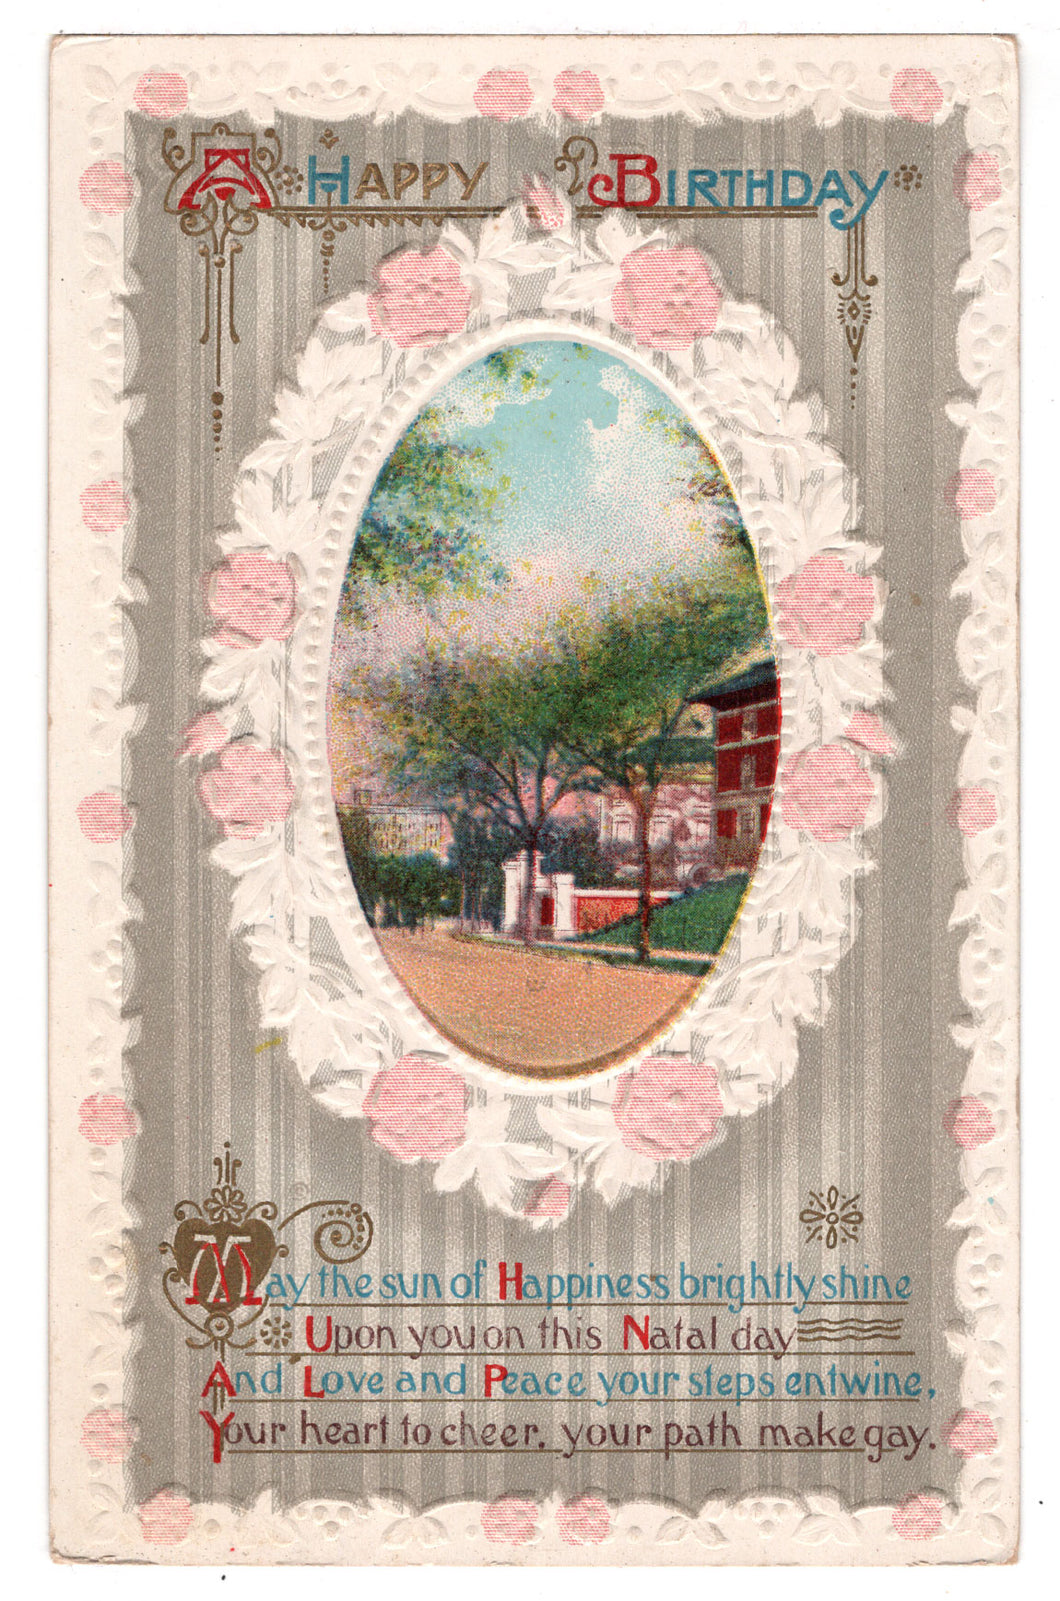 A Happy Birthday Vintage Original Postcard # 4557 - March 6, 1912